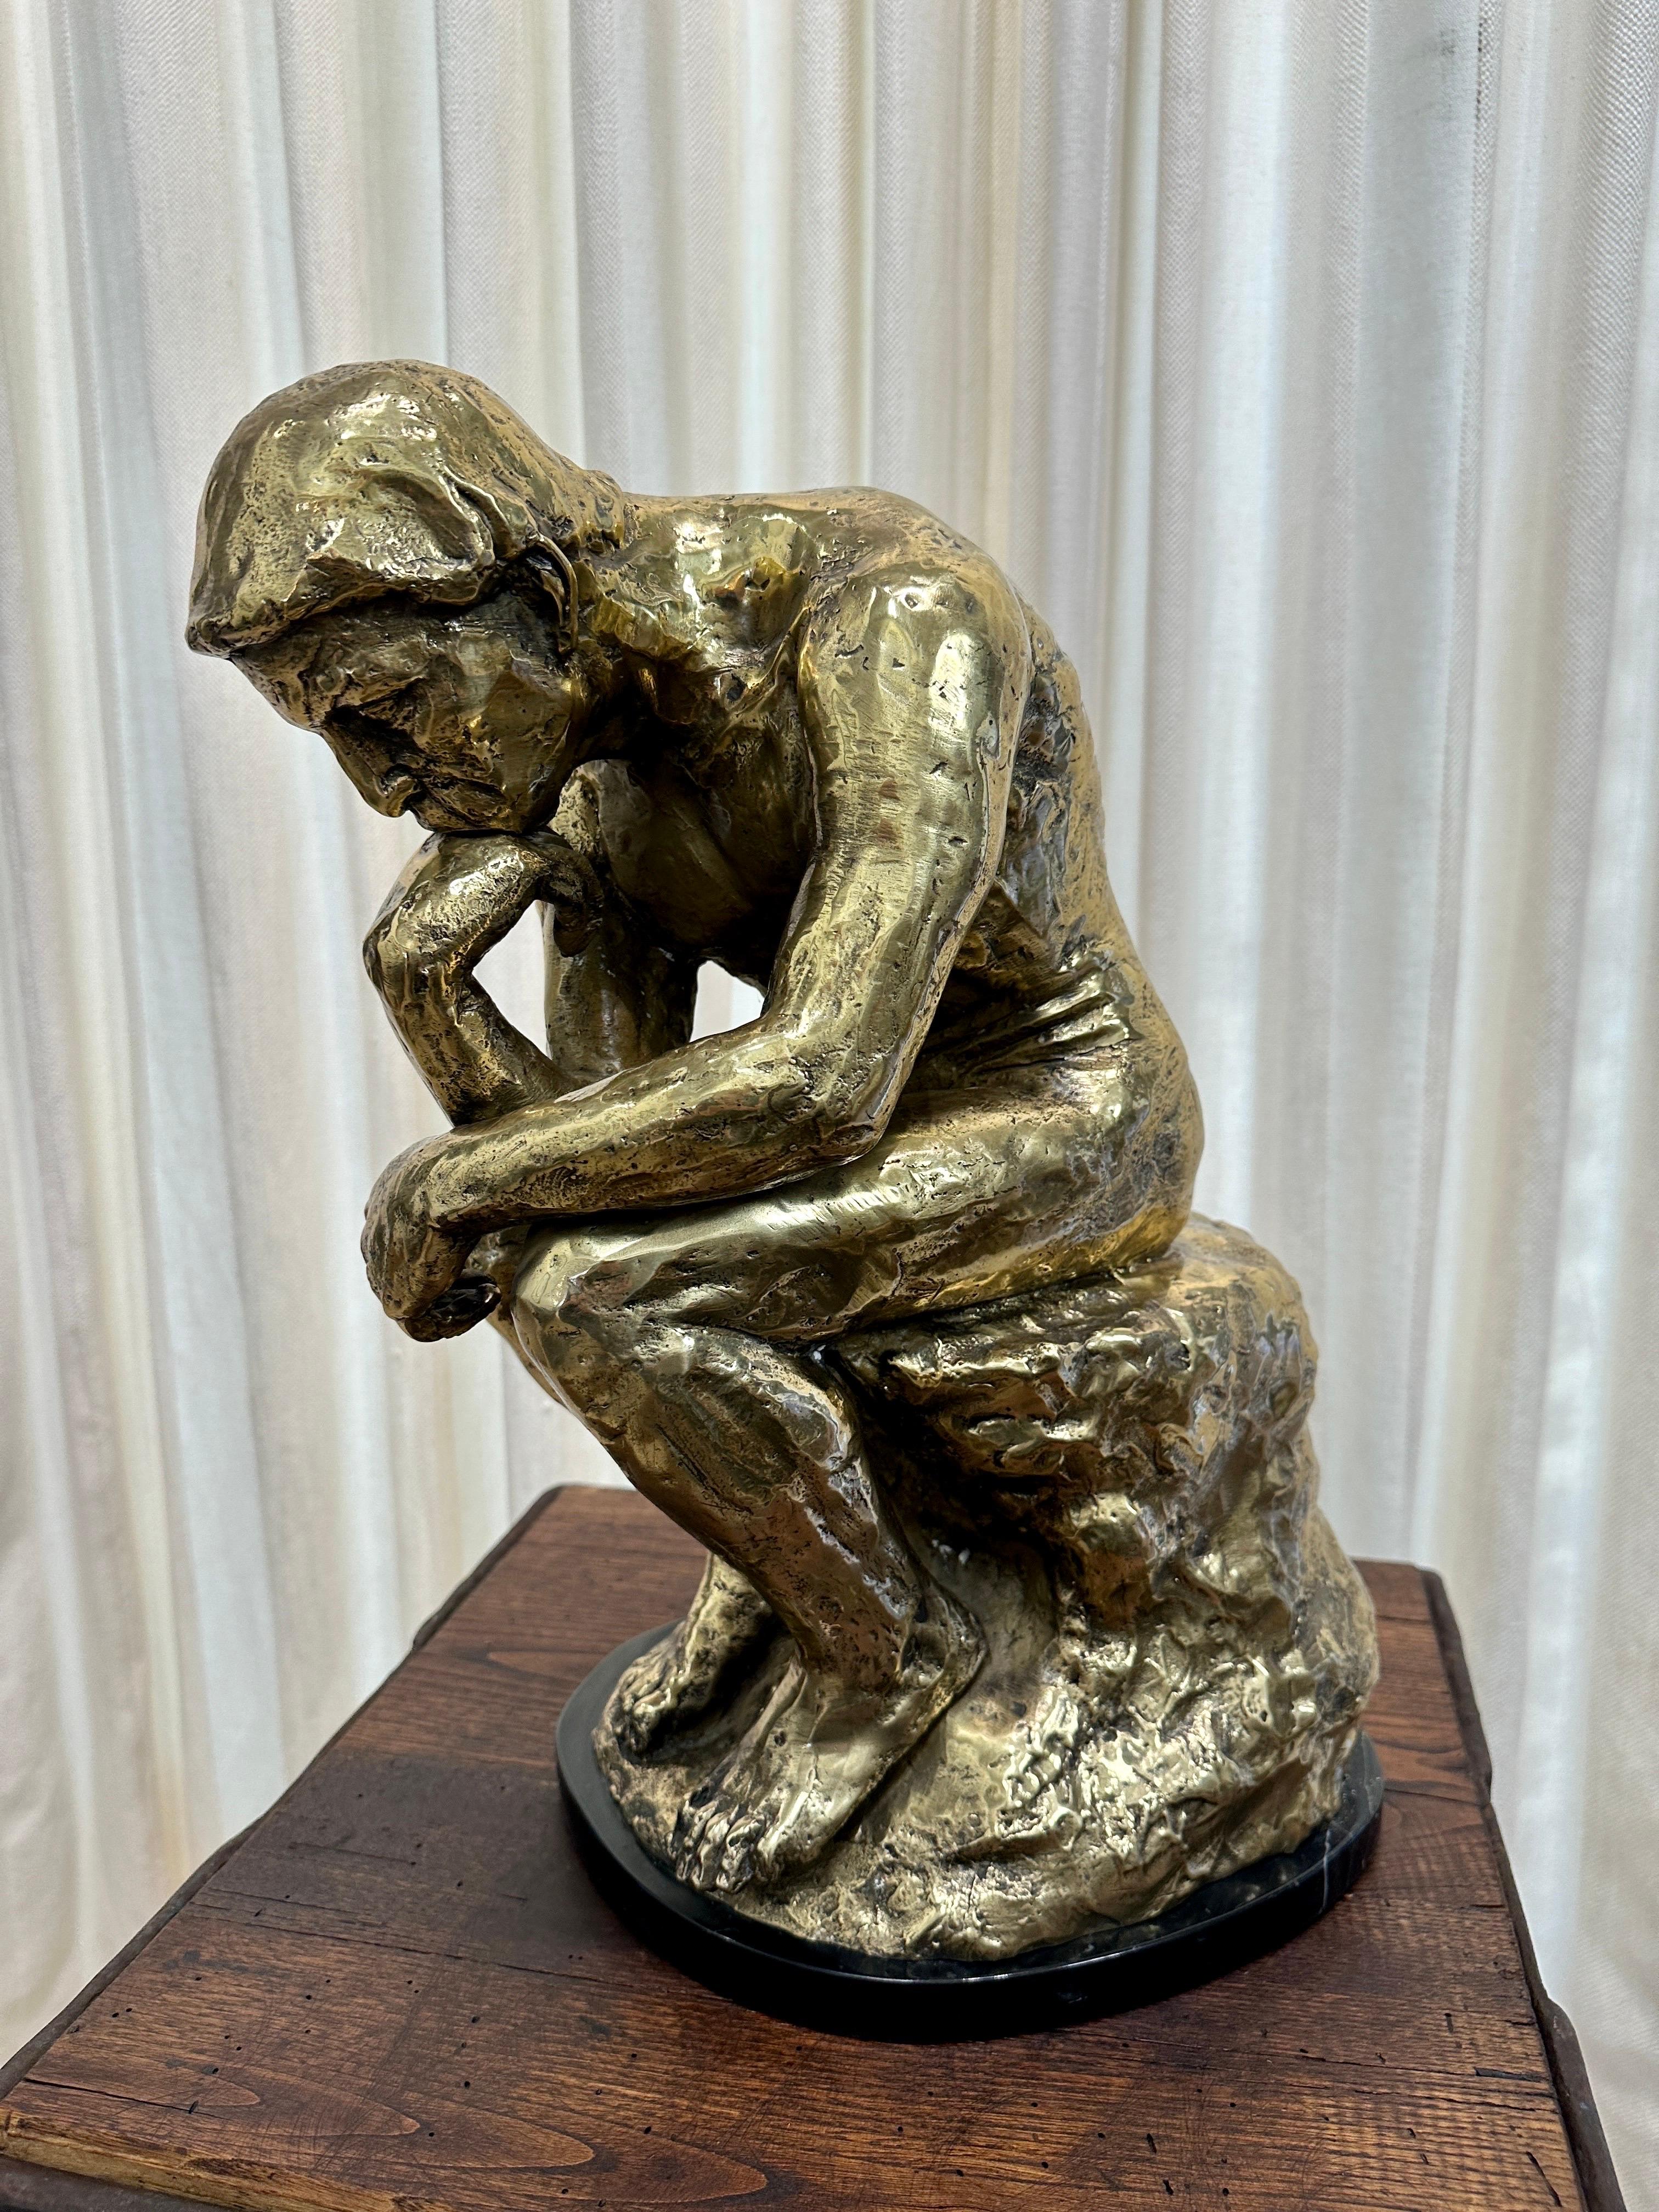 Signée V.I.I.Martine, cette magnifique version de la célèbre sculpture de Rodin, Le Penseur, est réalisée en laiton patiné et repose sur un socle en marbre noir.  Le piédestal illustré est vendu séparément MAIS il est parfait pour cette pièce.  CET